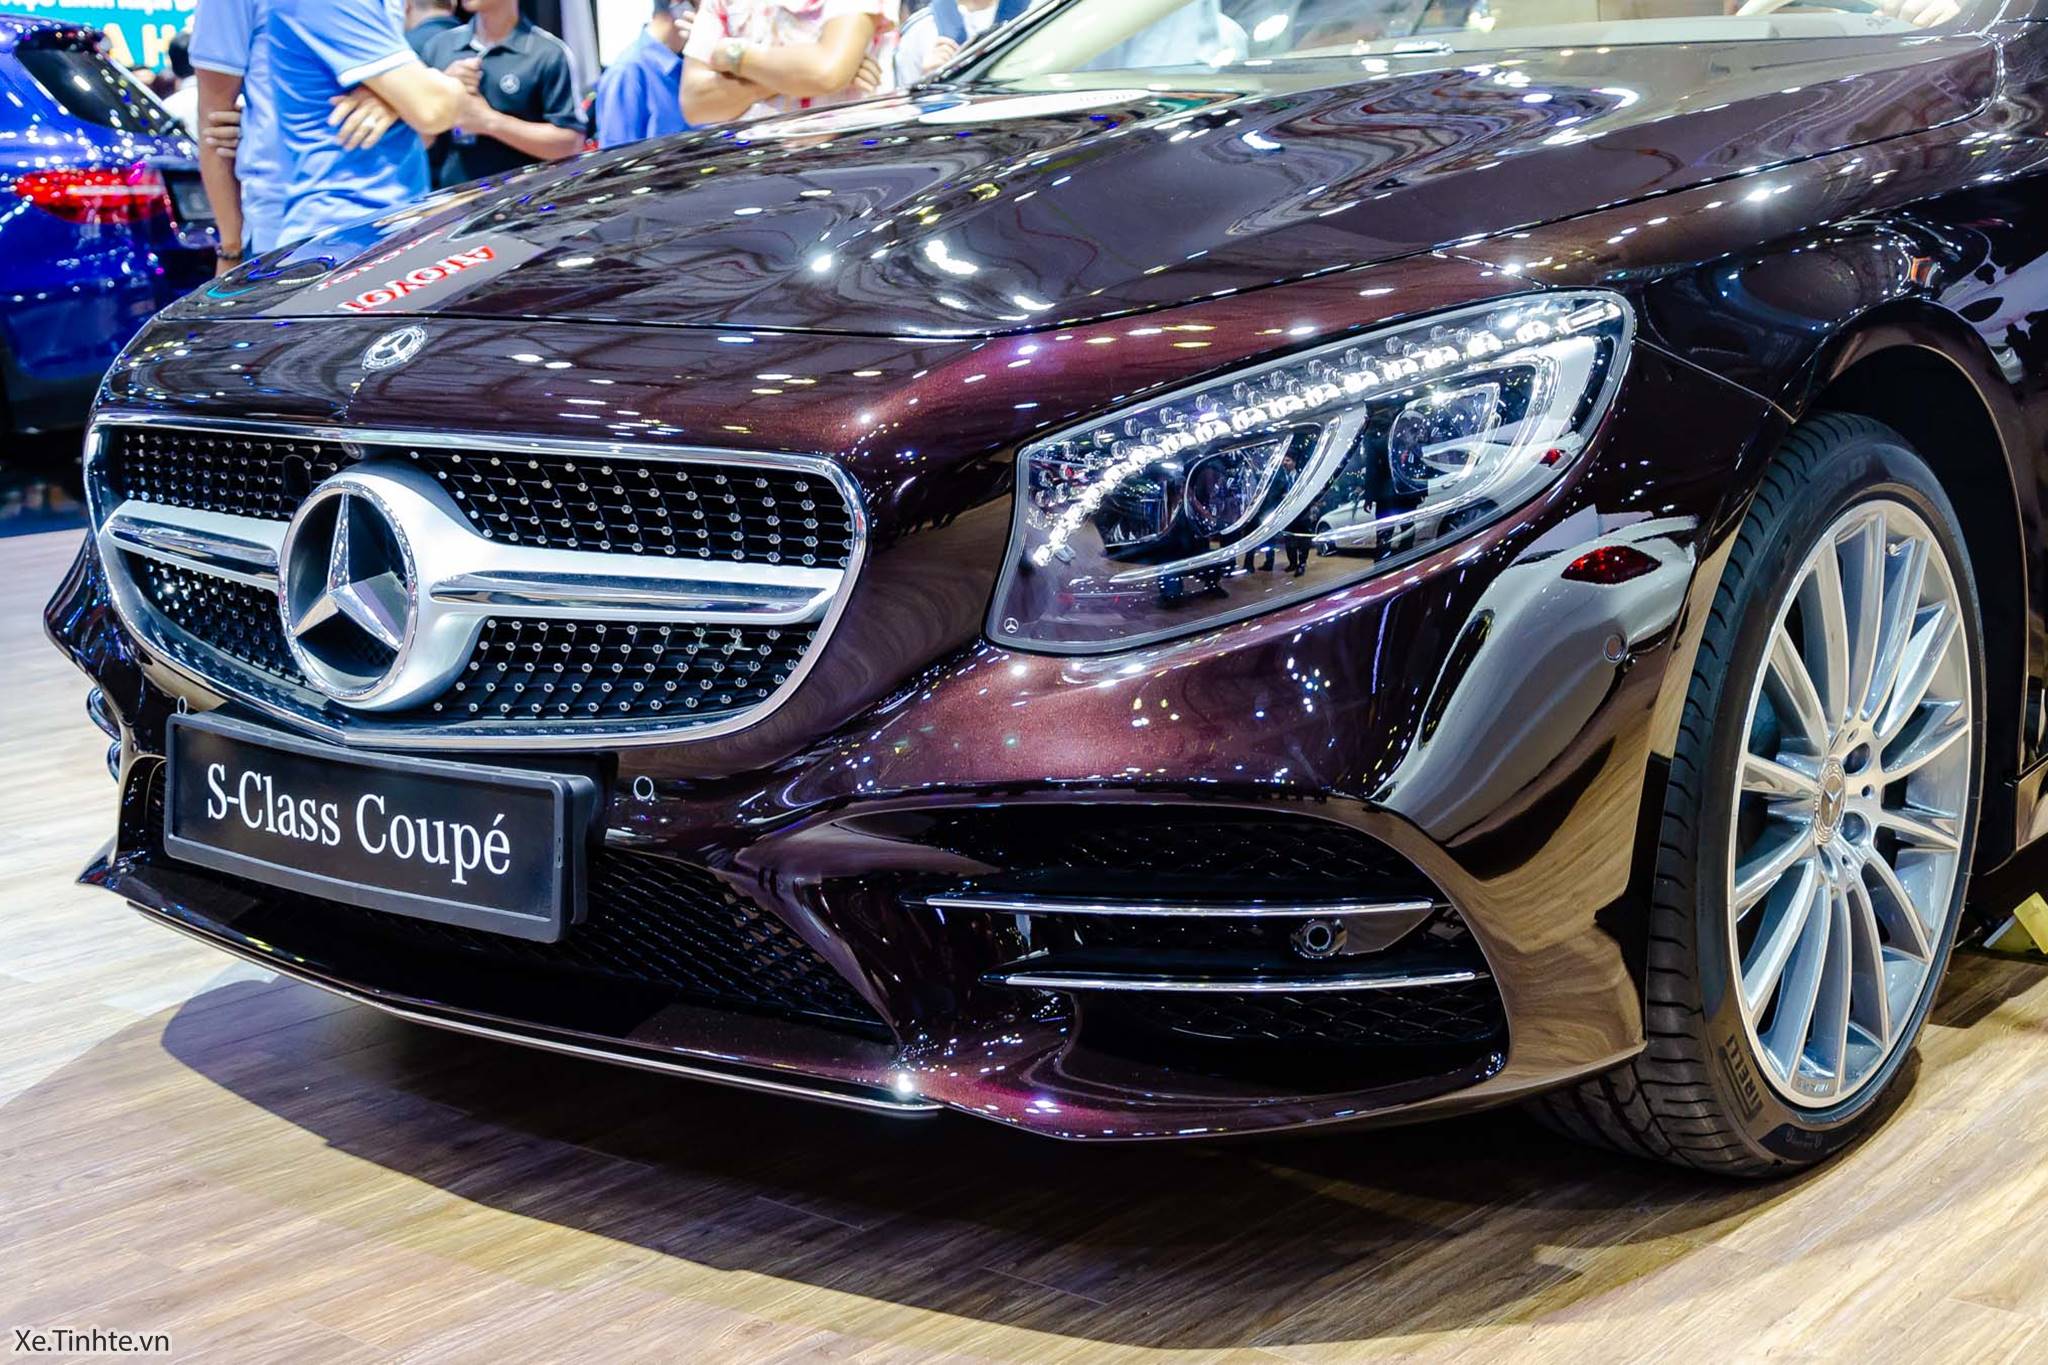 Đánh giá Mercedes S450 4Matic Coupe 2020: “Bí mật của Mẹc